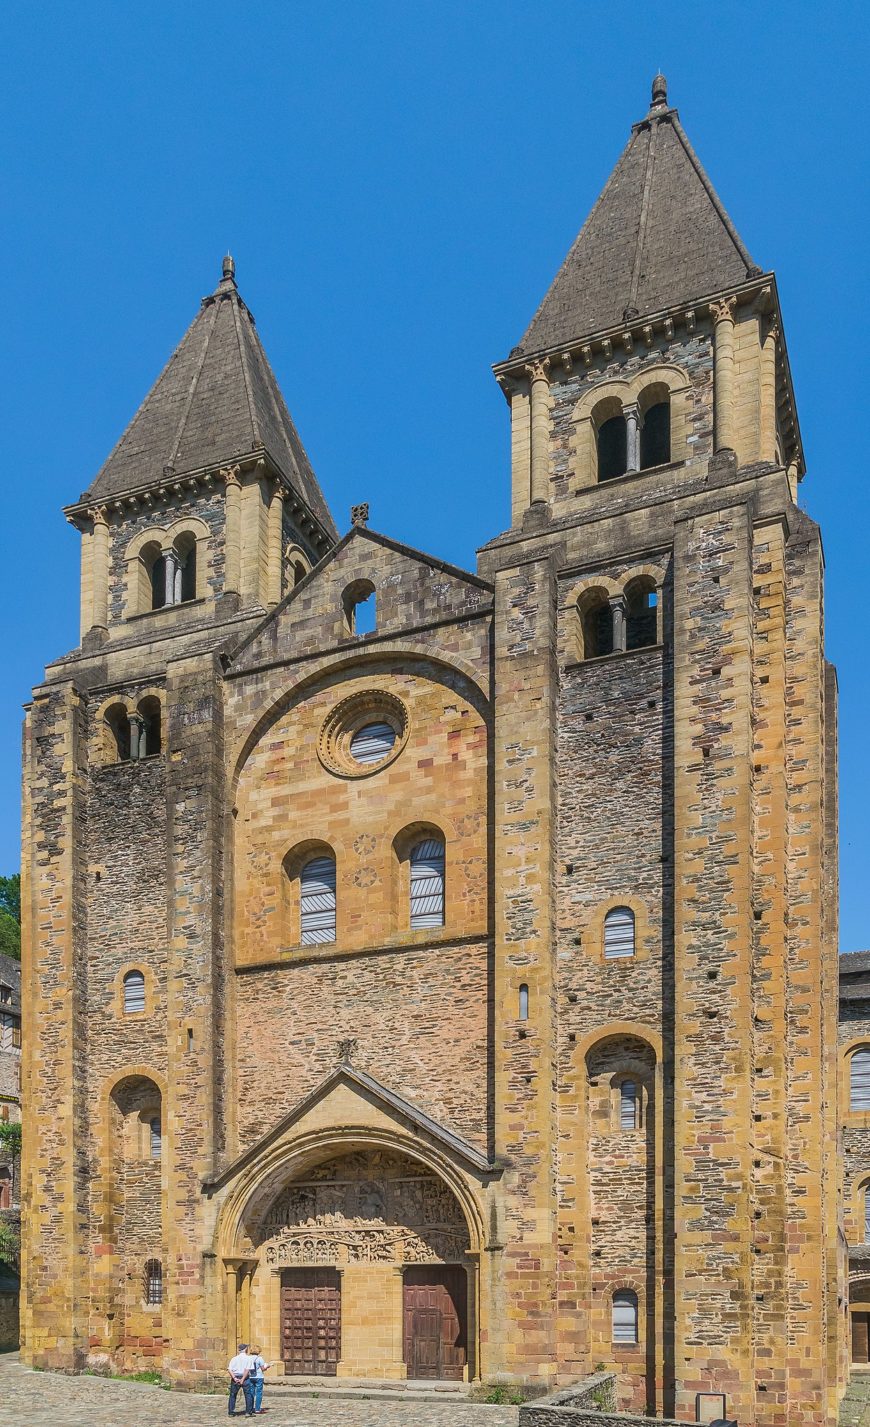 Church of Sainte‐Foy, Conques, France, c. 1050–1130 C.E. (photo: Tournasol7, CC BY-SA 4.0)